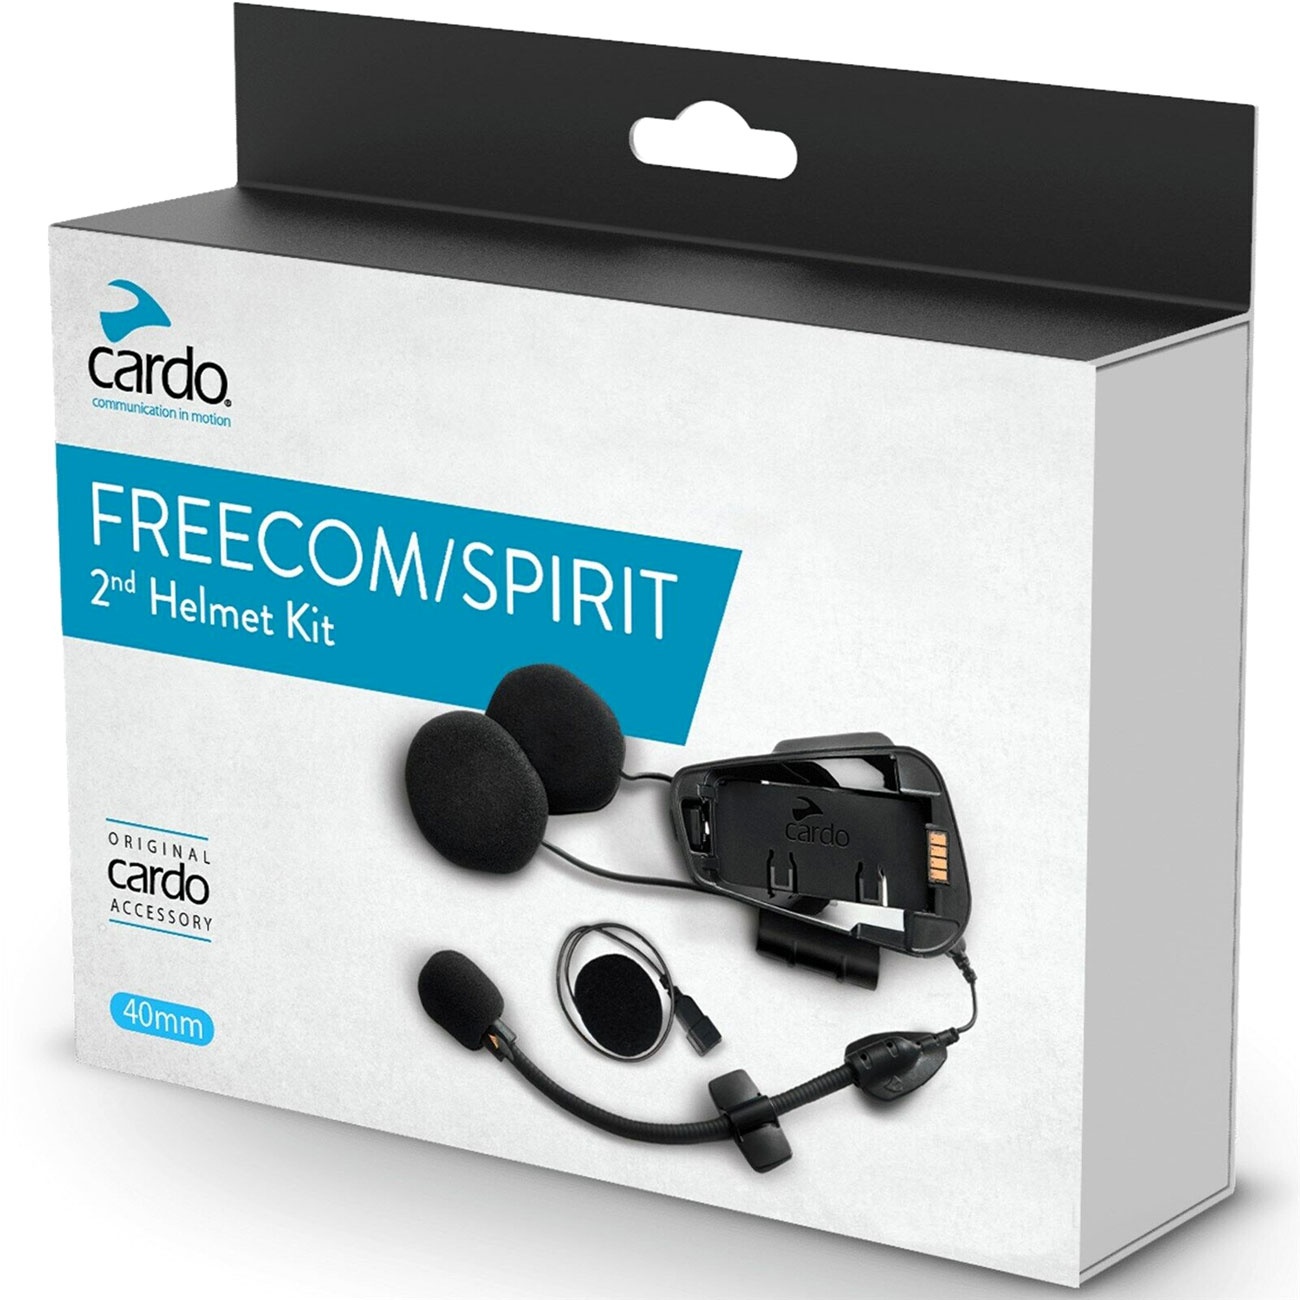 Cardo Freecom/Spirit, kit audio - Original